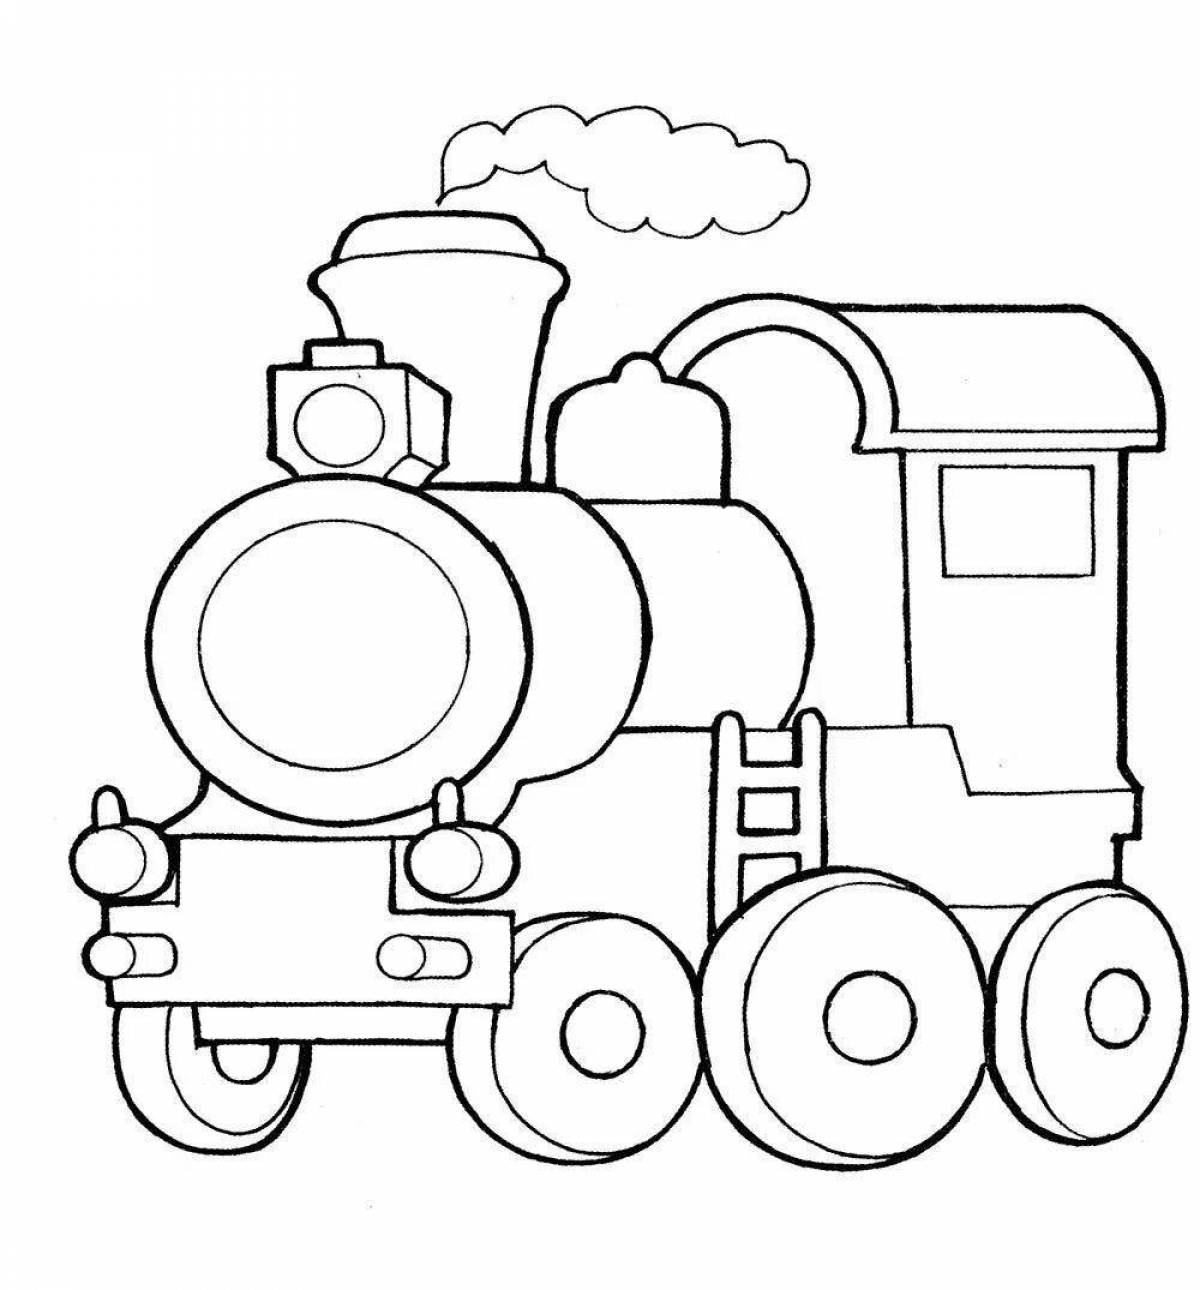 Цветная детская раскраска поезд